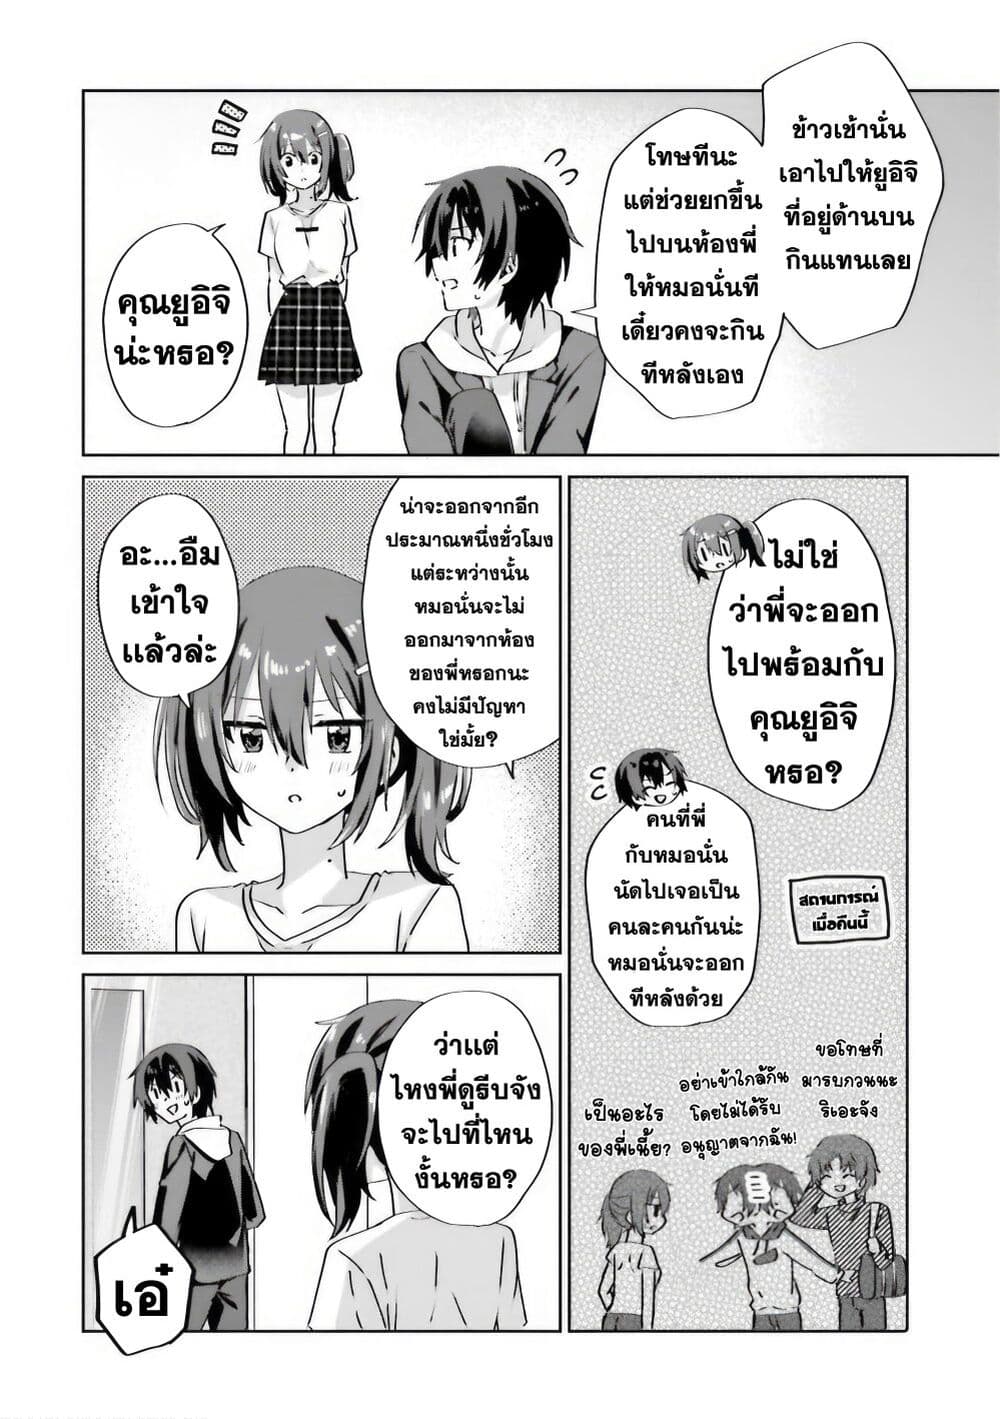 Romcom Manga ni Haitte Shimatta no de 6.4 (3)